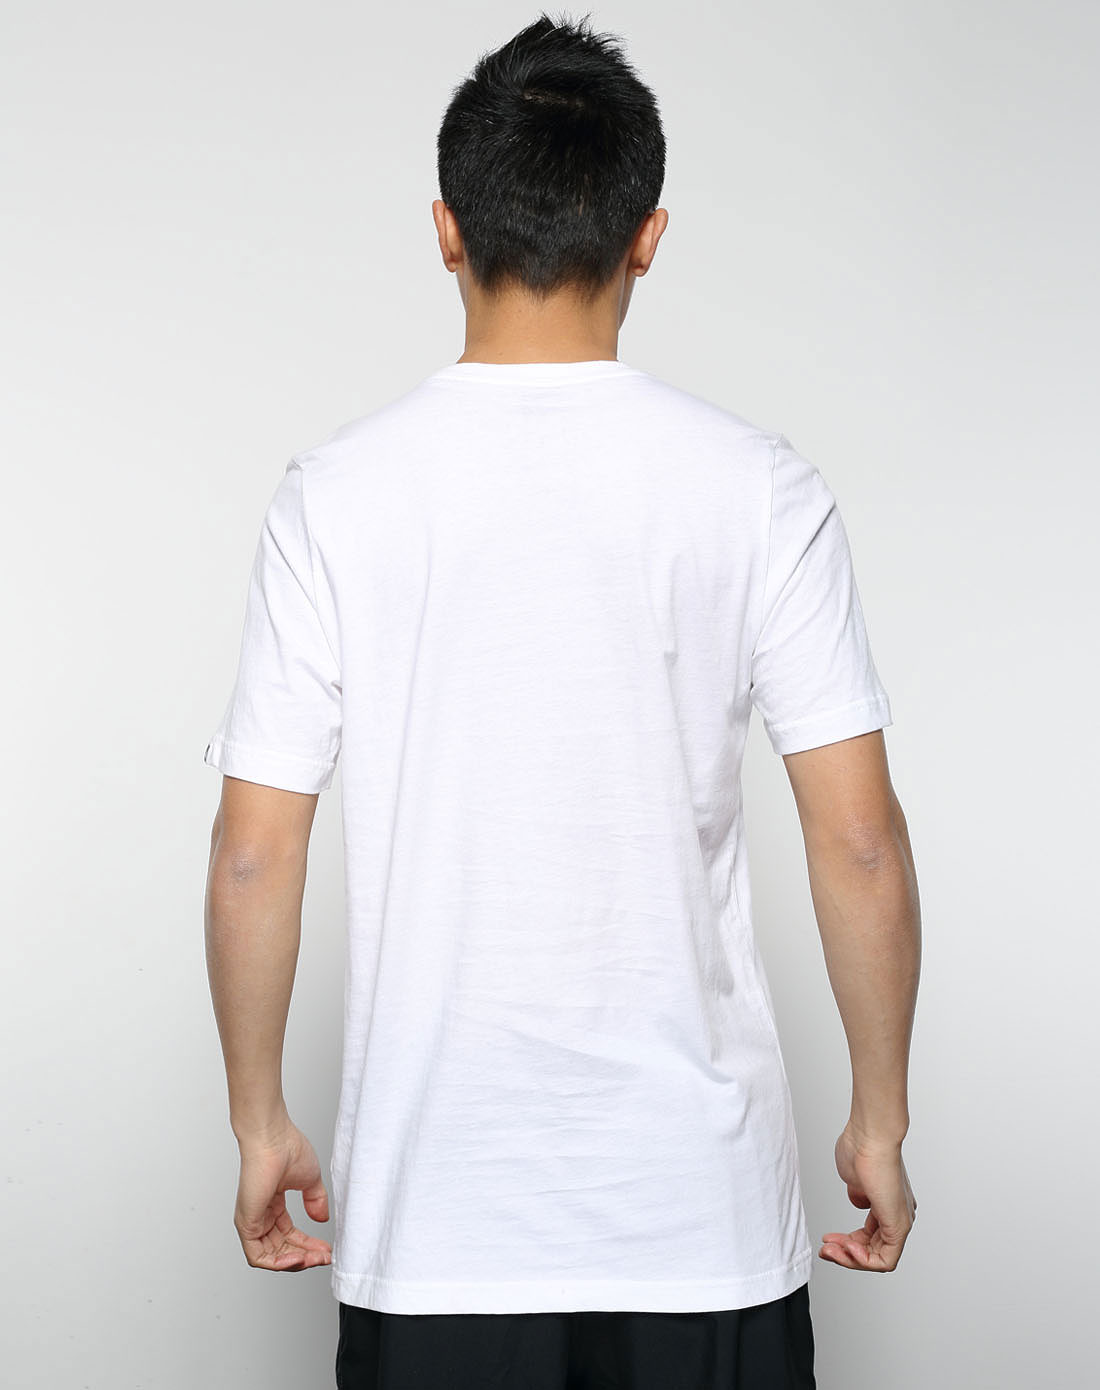 耐克Nike男子白色短袖T恤432468-100